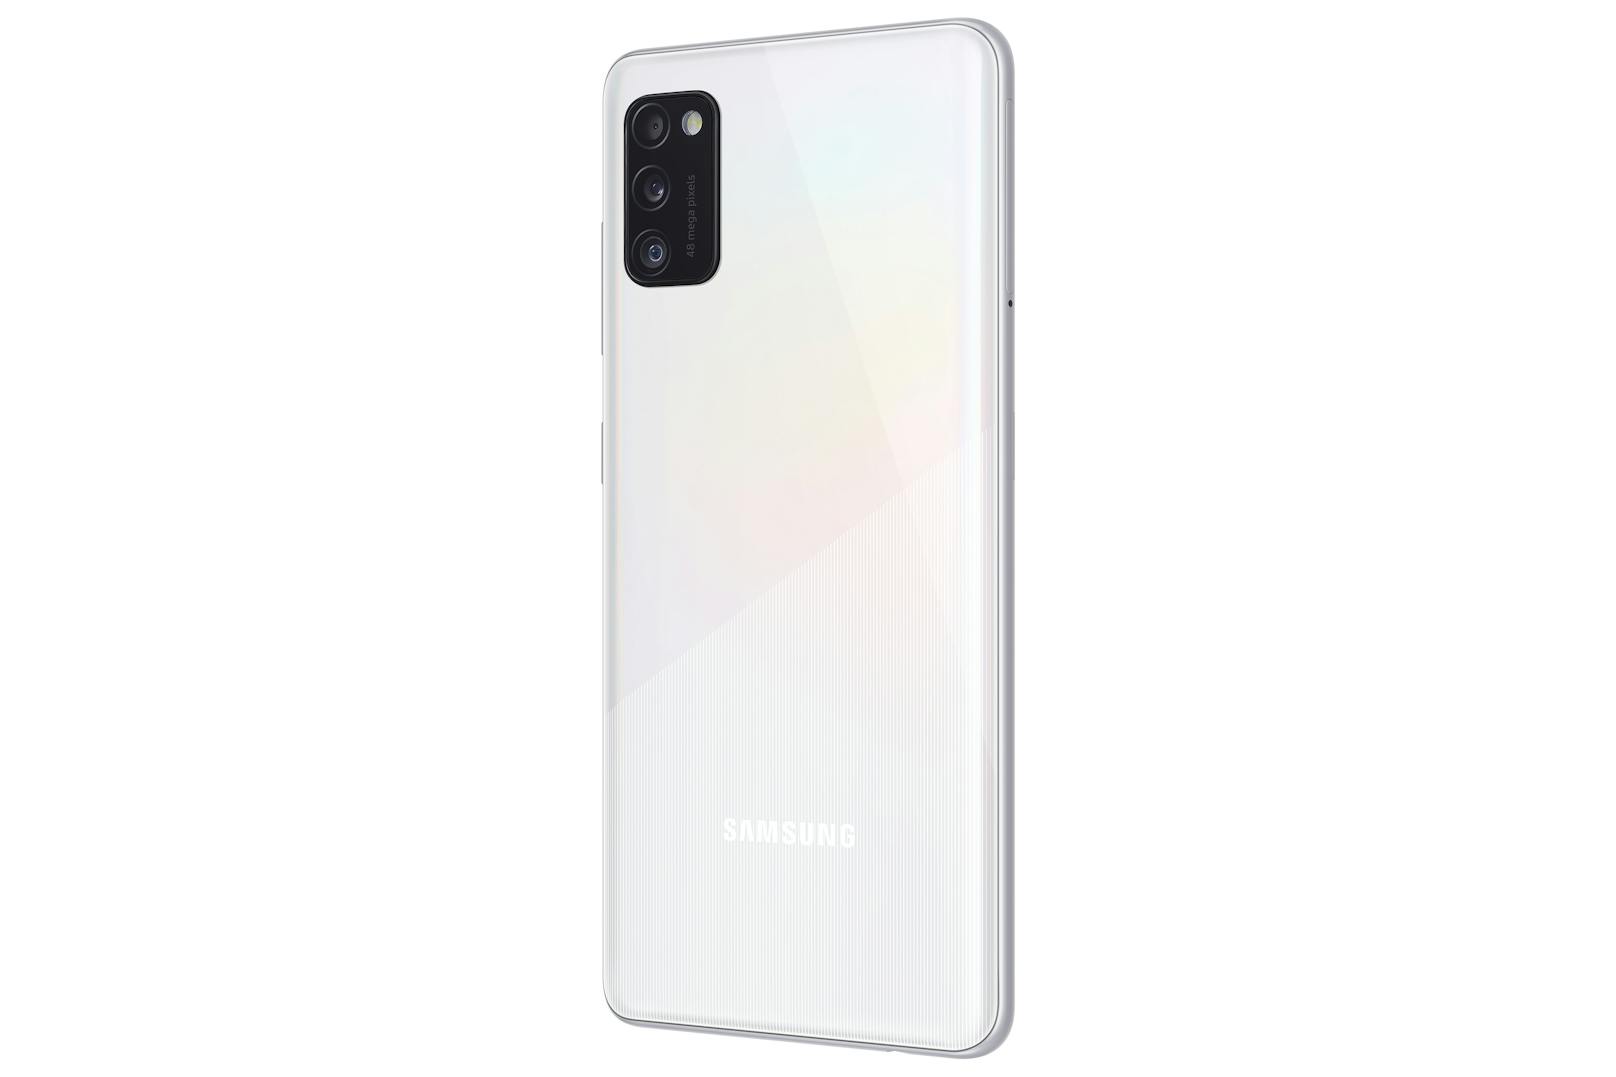 Das Galaxy A41 richtet sich laut Samsung an alle, die sich ein kompaktes Smartphone wünschen, aber keine Abstriche in Sachen Leistungsfähigkeit machen wollen.